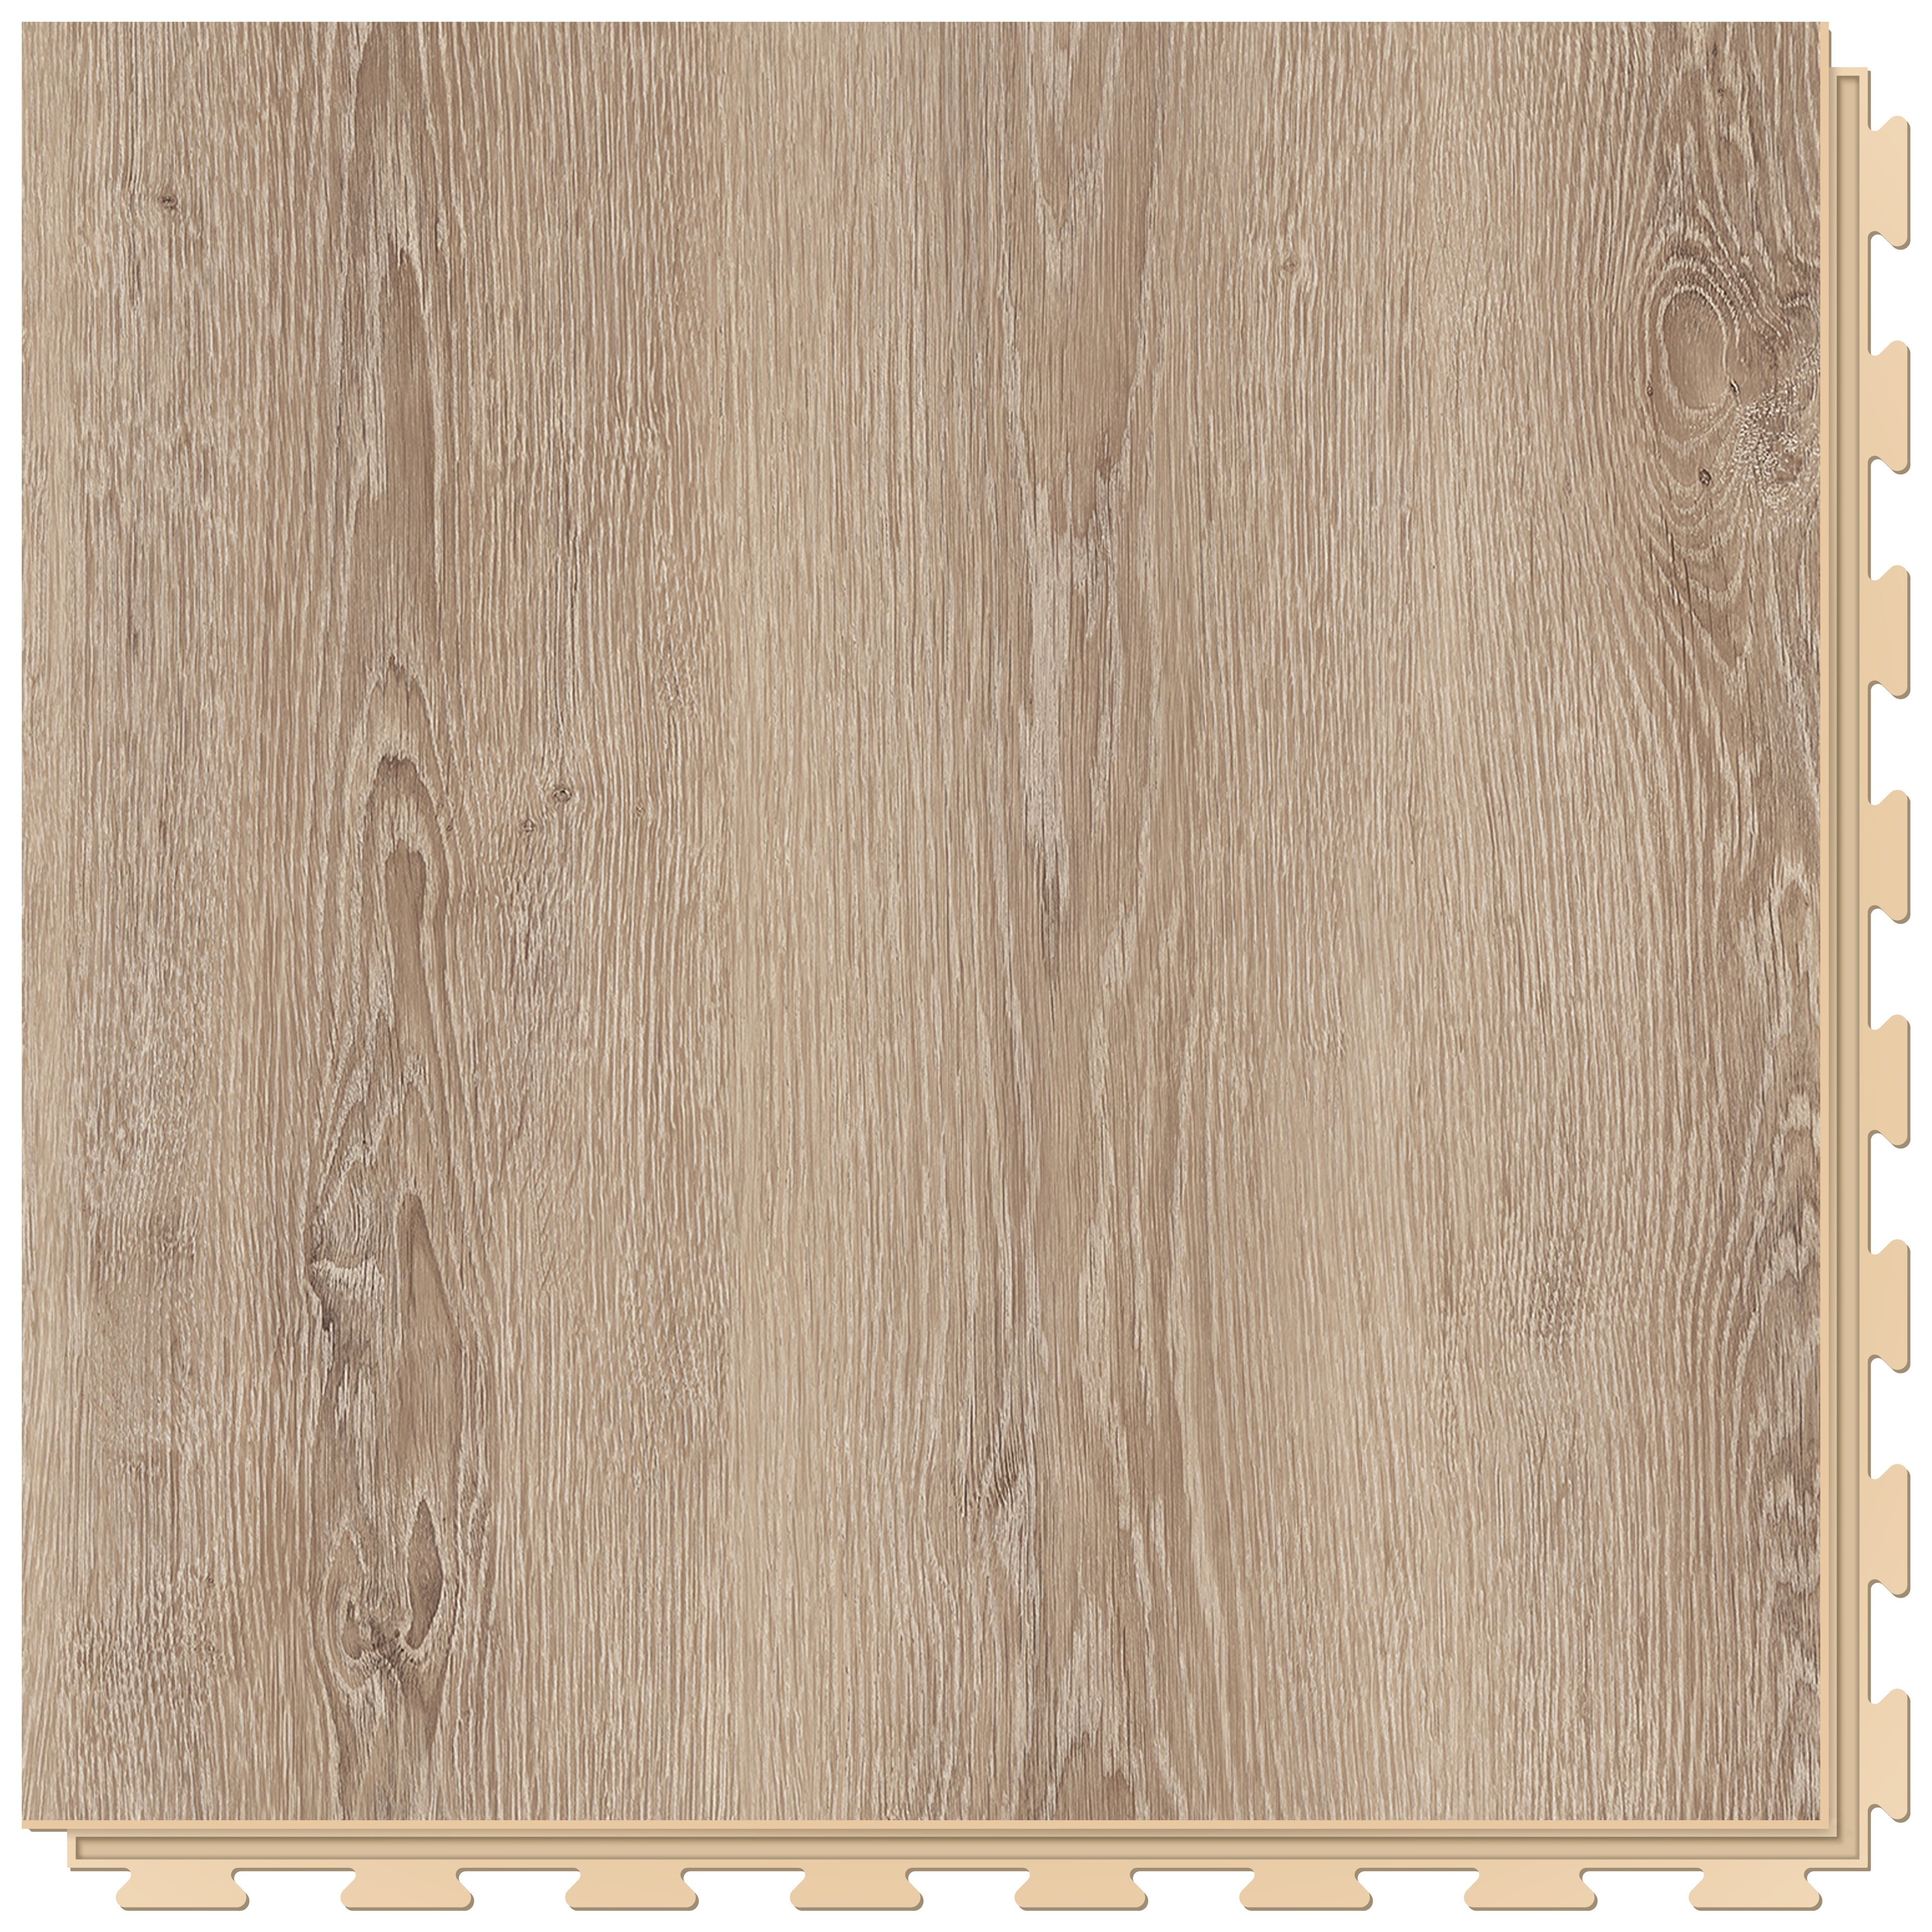 Hnědá PVC vinylová dlaždice Fortelock Business Tyrolean oak W001 Beige - délka 66,8 cm, šířka 66,8 cm, výška 0,7 cm